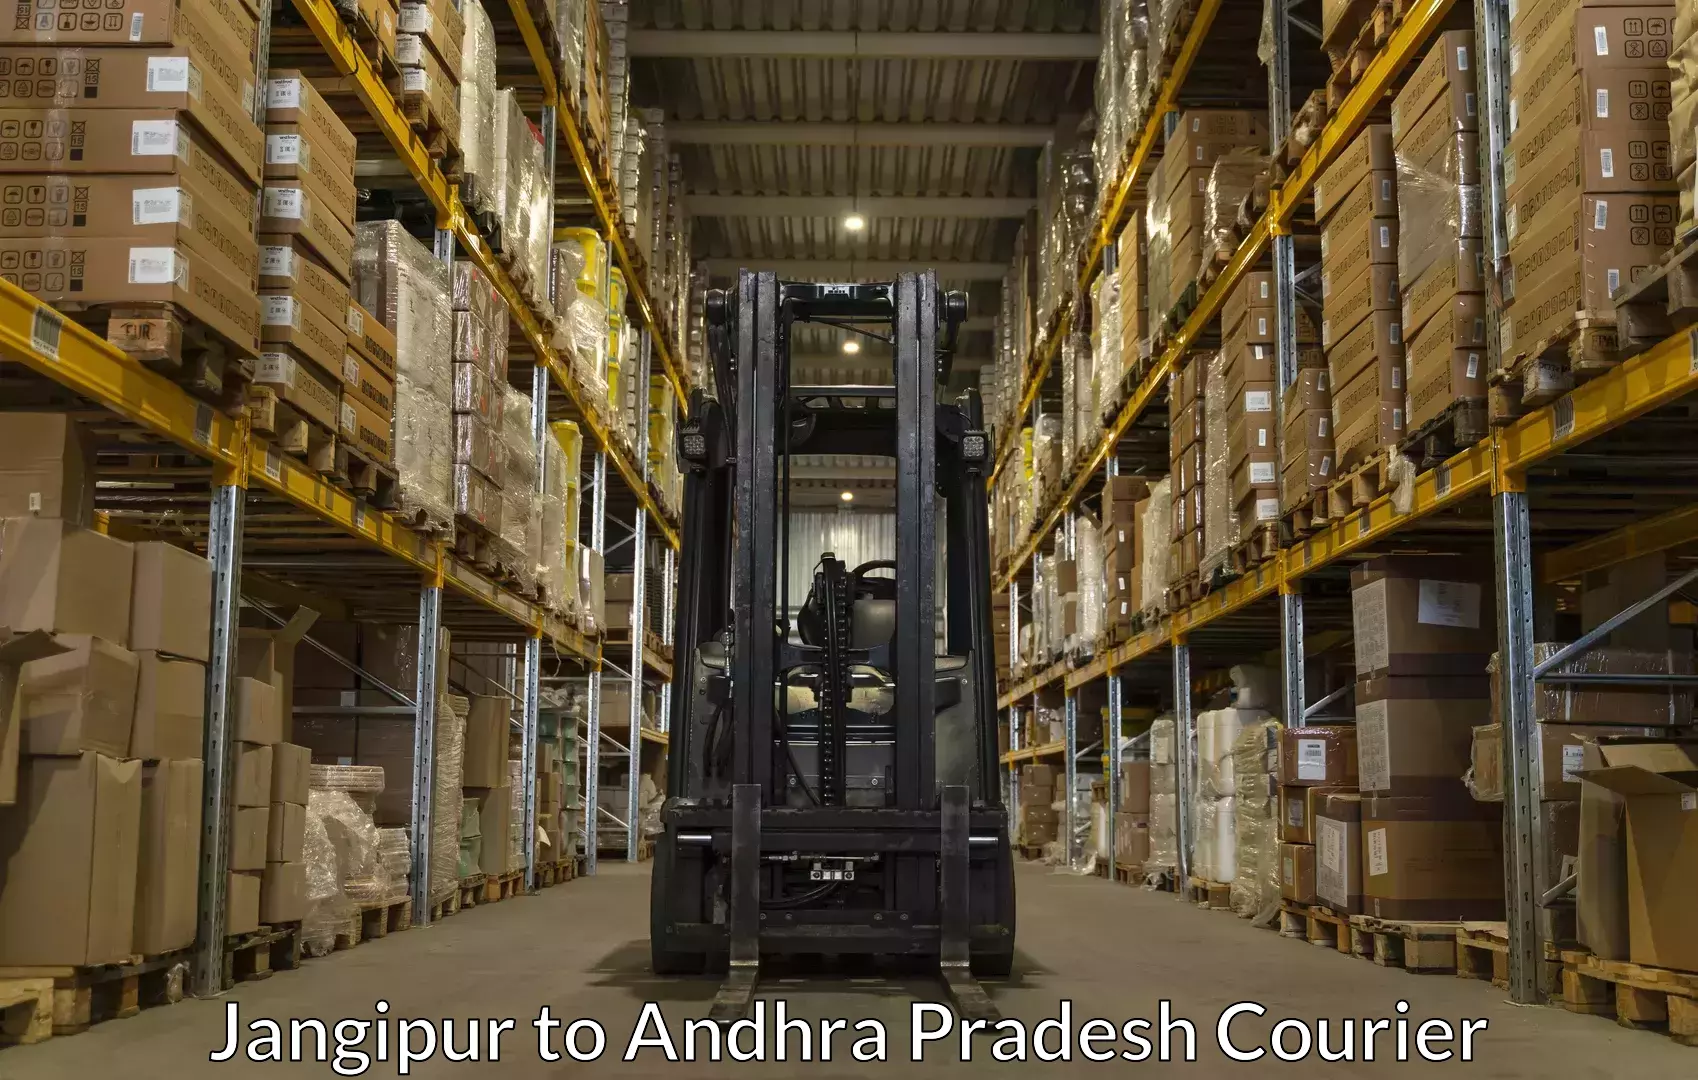 Excess baggage transport in Jangipur to Andhra Pradesh